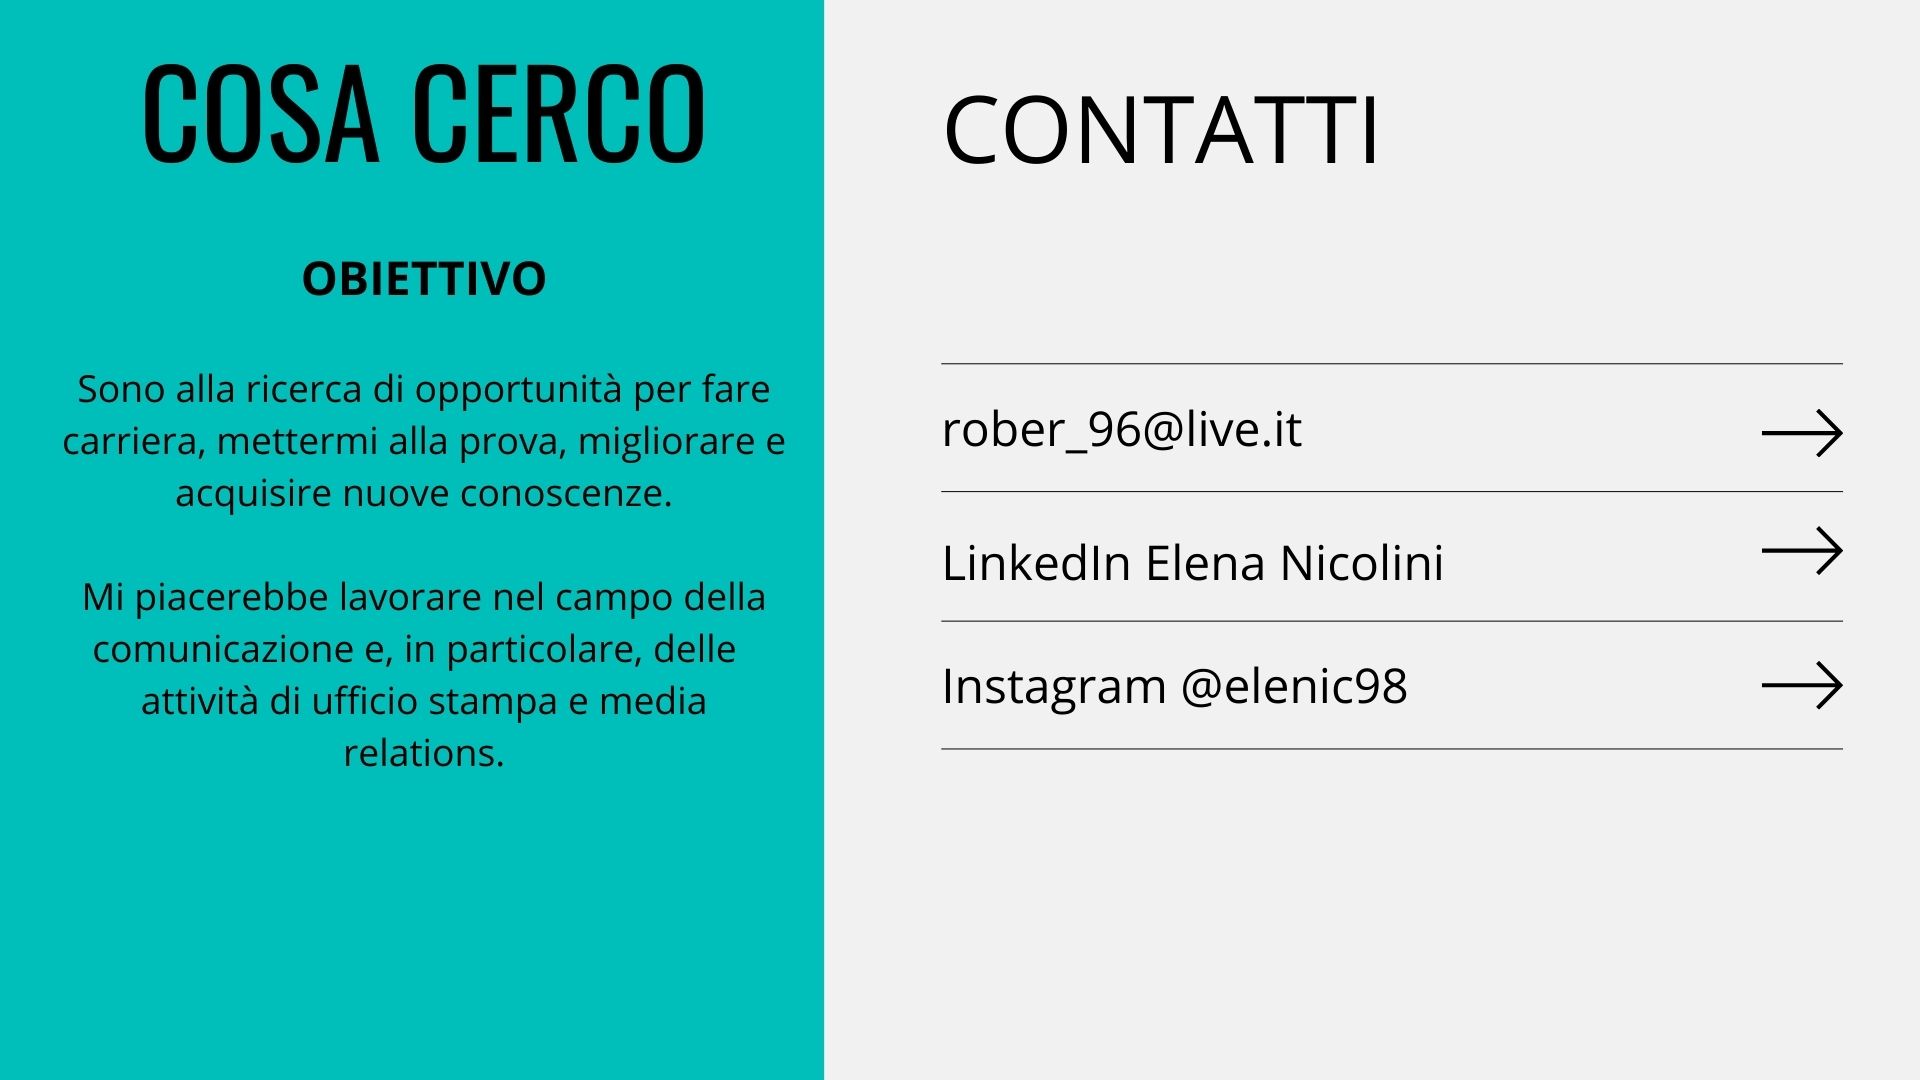 CONTATTI

 

 

rober_96@live.it —&gt;
LinkedIn Elena Nicolini —
Instagram @elenic98 —